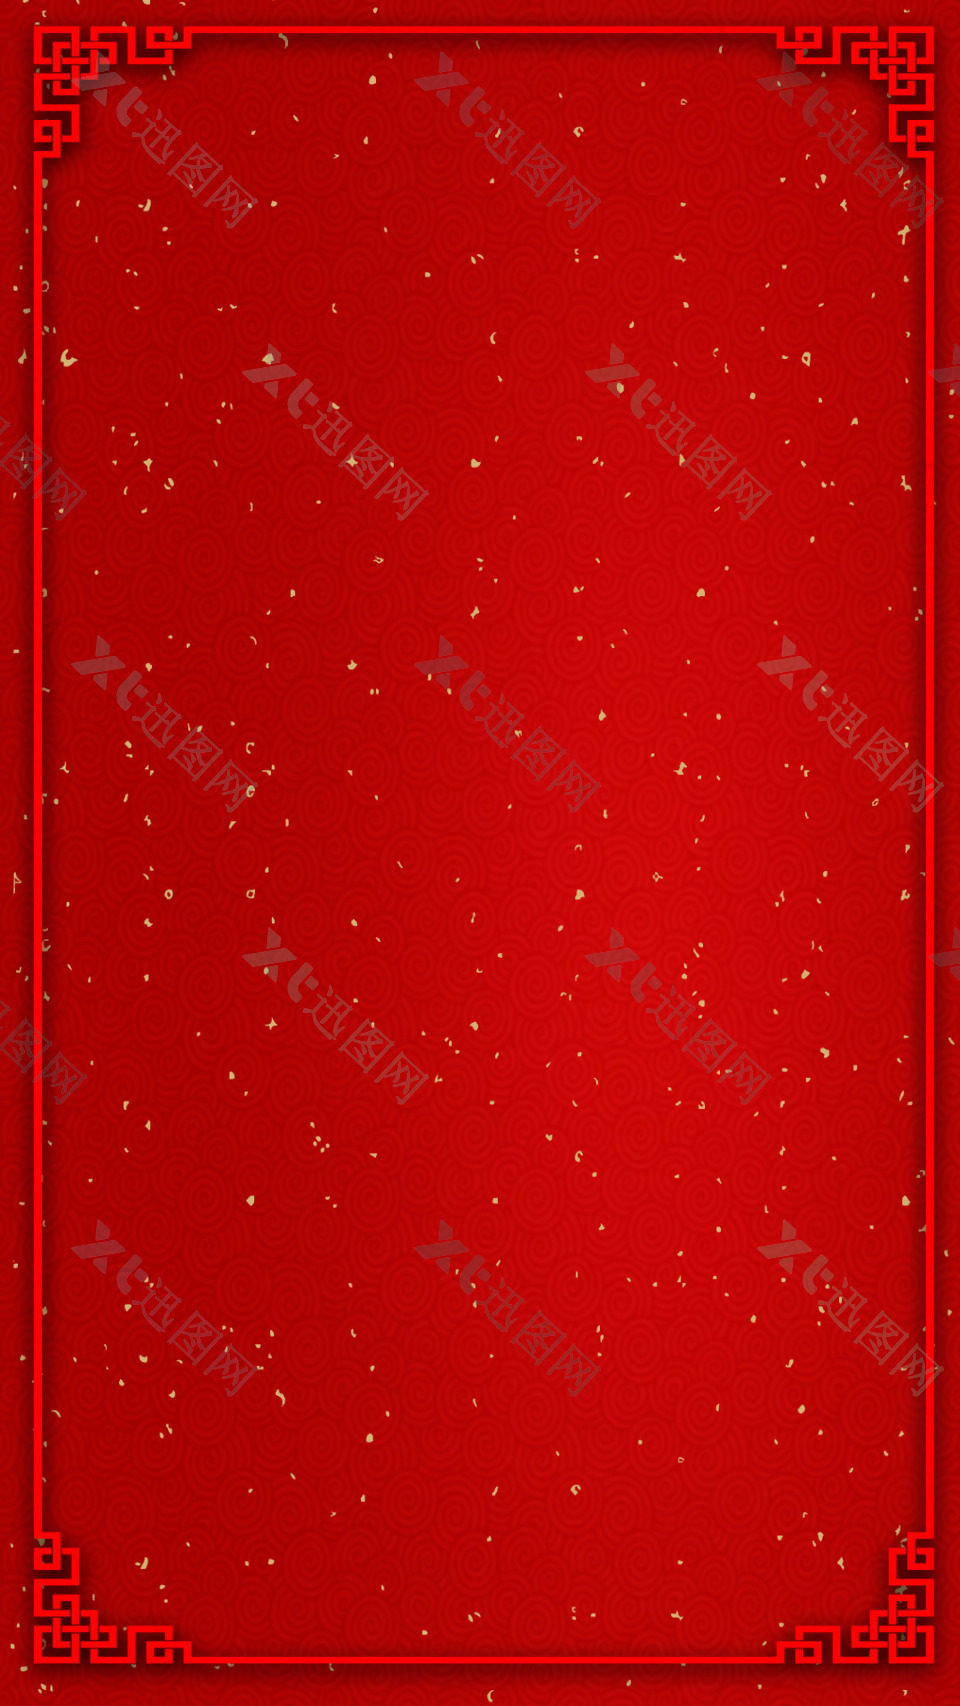 简约红色边框星光点H5背景素材